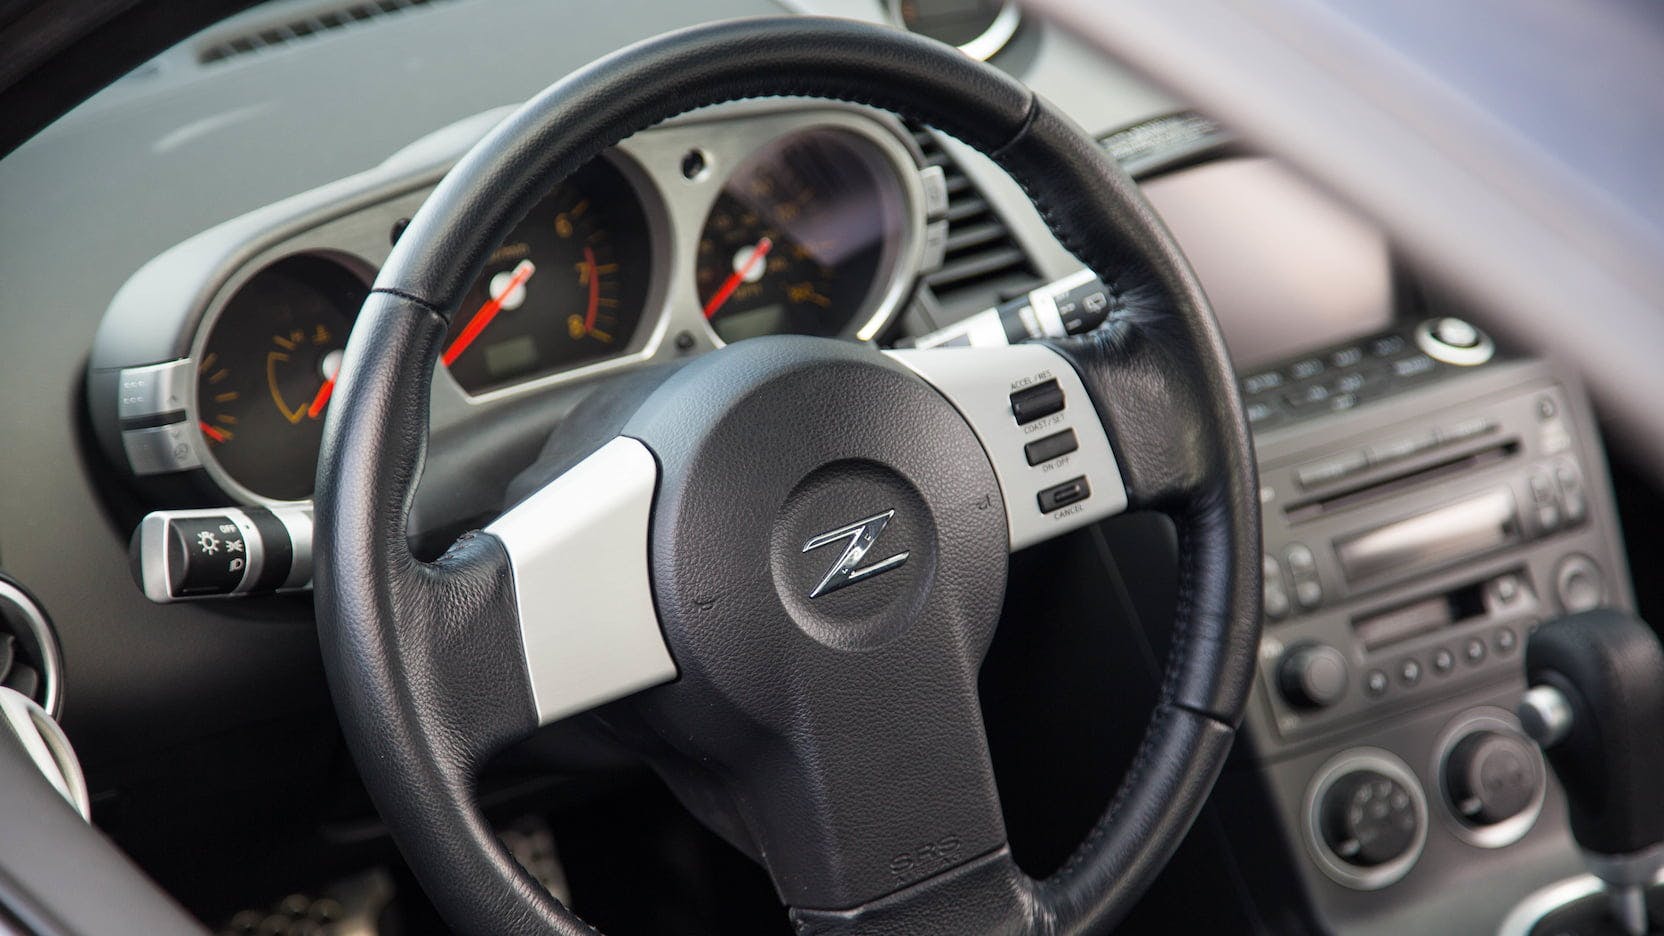 2003 Nissan 350Z steering wheel